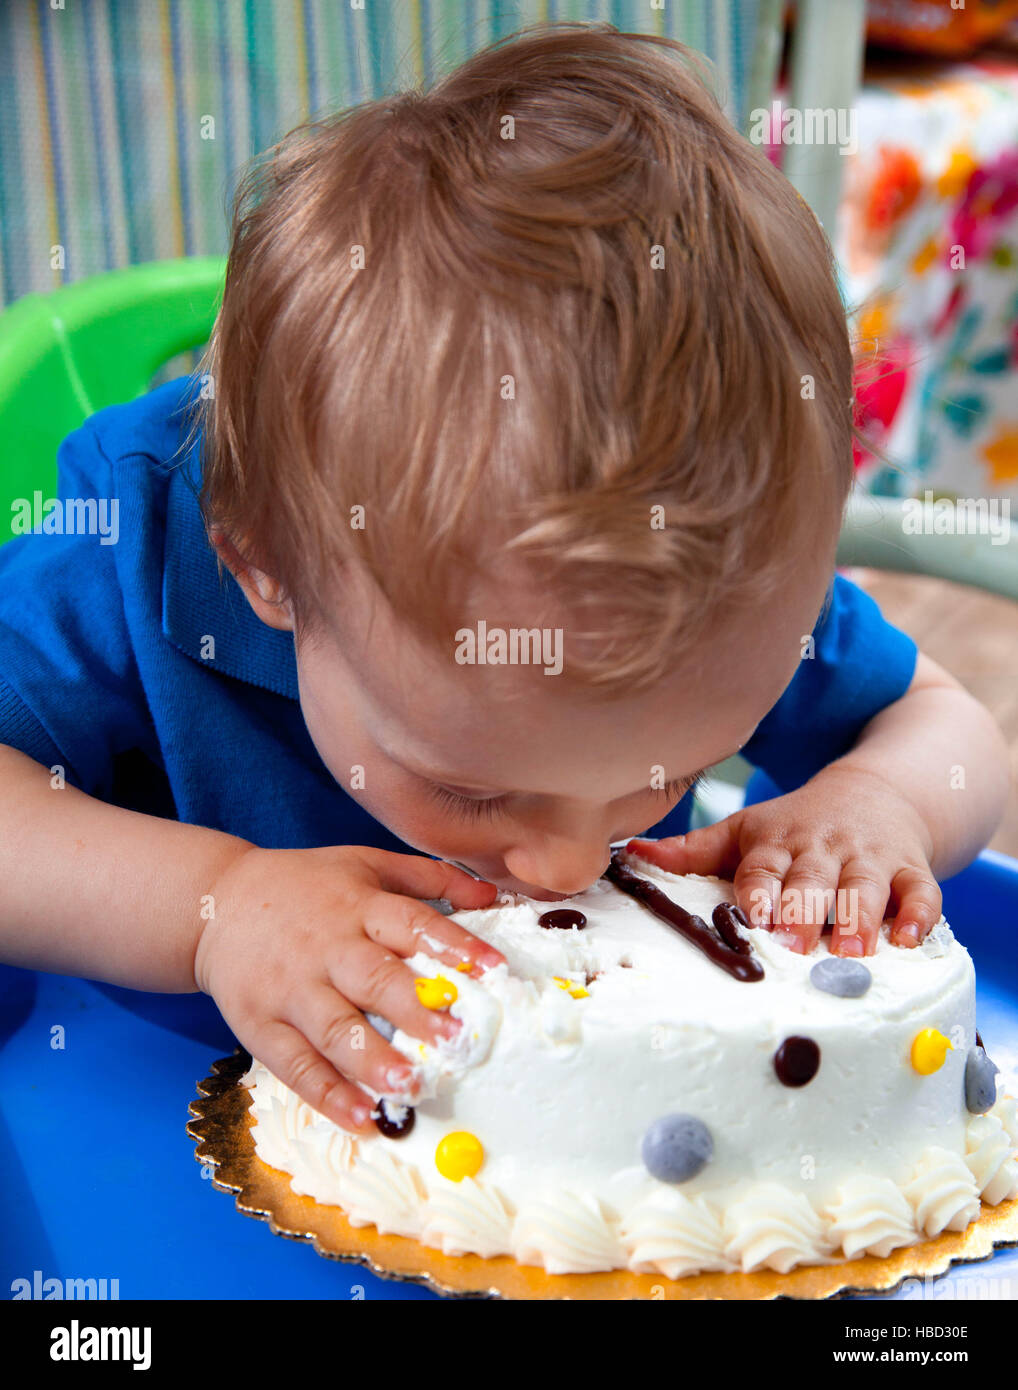 Kaukasische junge feiert seinen 1. Geburtstag mit Kuchen draußen im Sommer Stockfoto